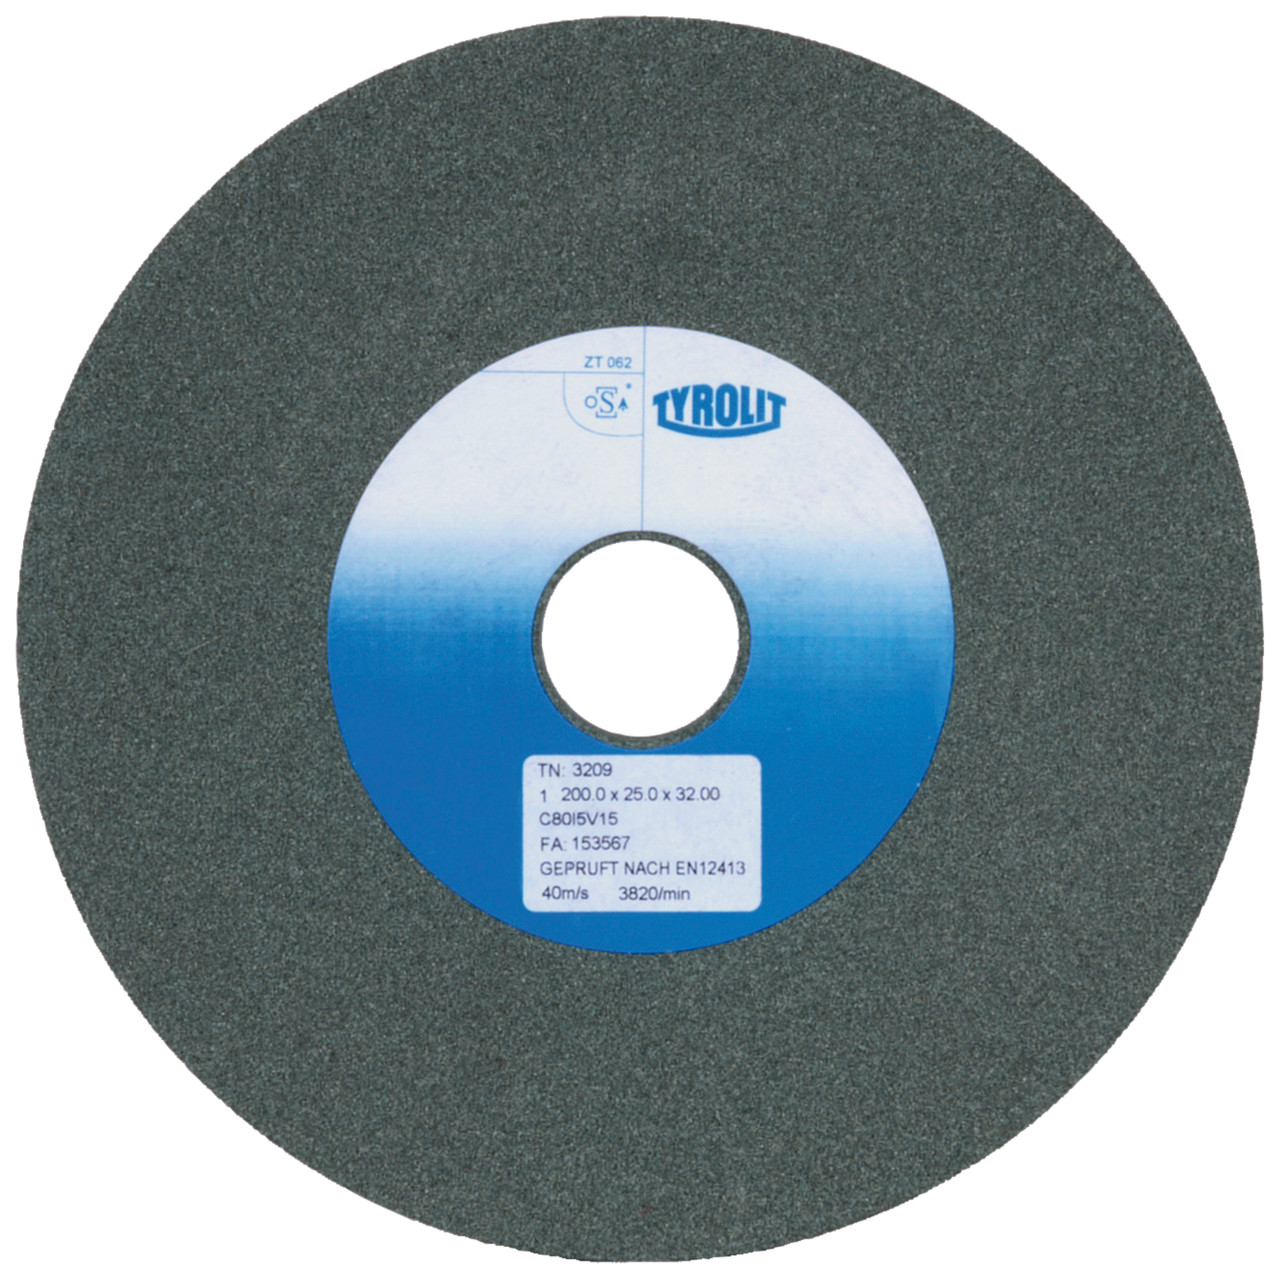 TYROLIT discos abrasivos cerámicos convencionales DxDxH 200x32x51 Para metal duro y fundición, forma: 1, Art. 9651